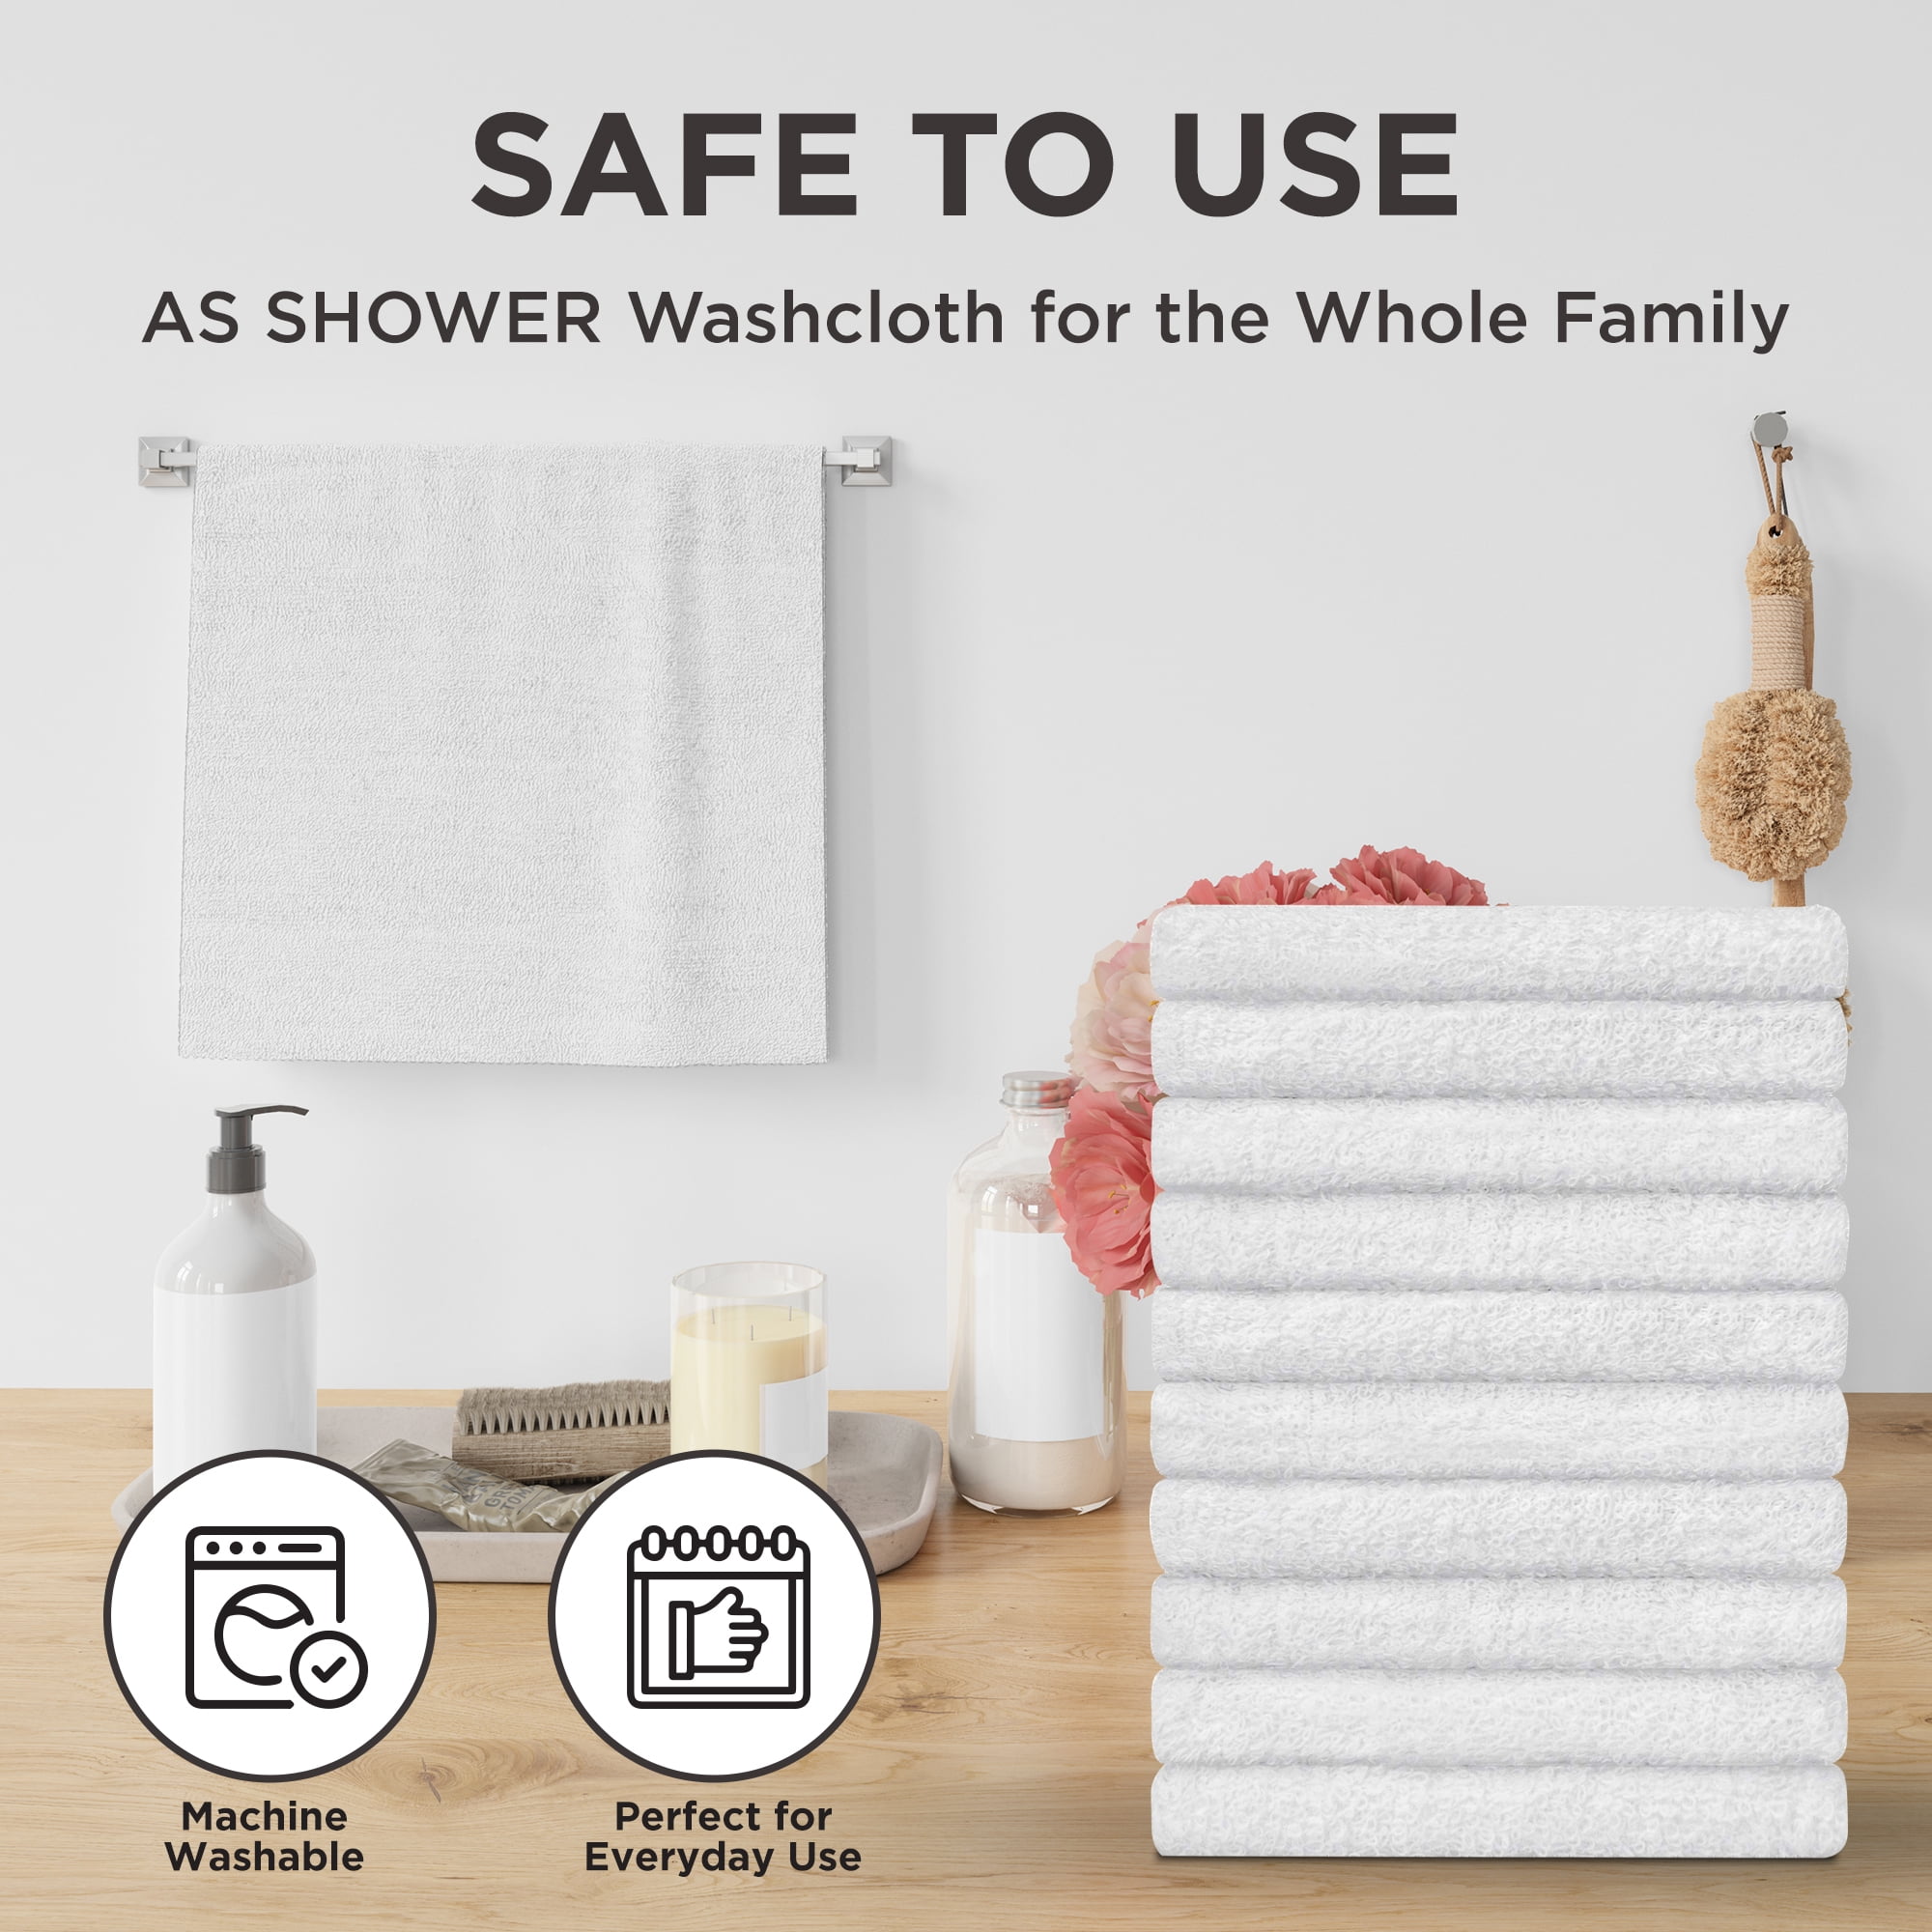 12 inch x 12 inch White Cotton Value Washcloths - Reusable LT Weight Thin Cloth Rags - Bath/Baby/Kitchen/Garage - 1 lb per Dozen - Set of 24, Size: 12